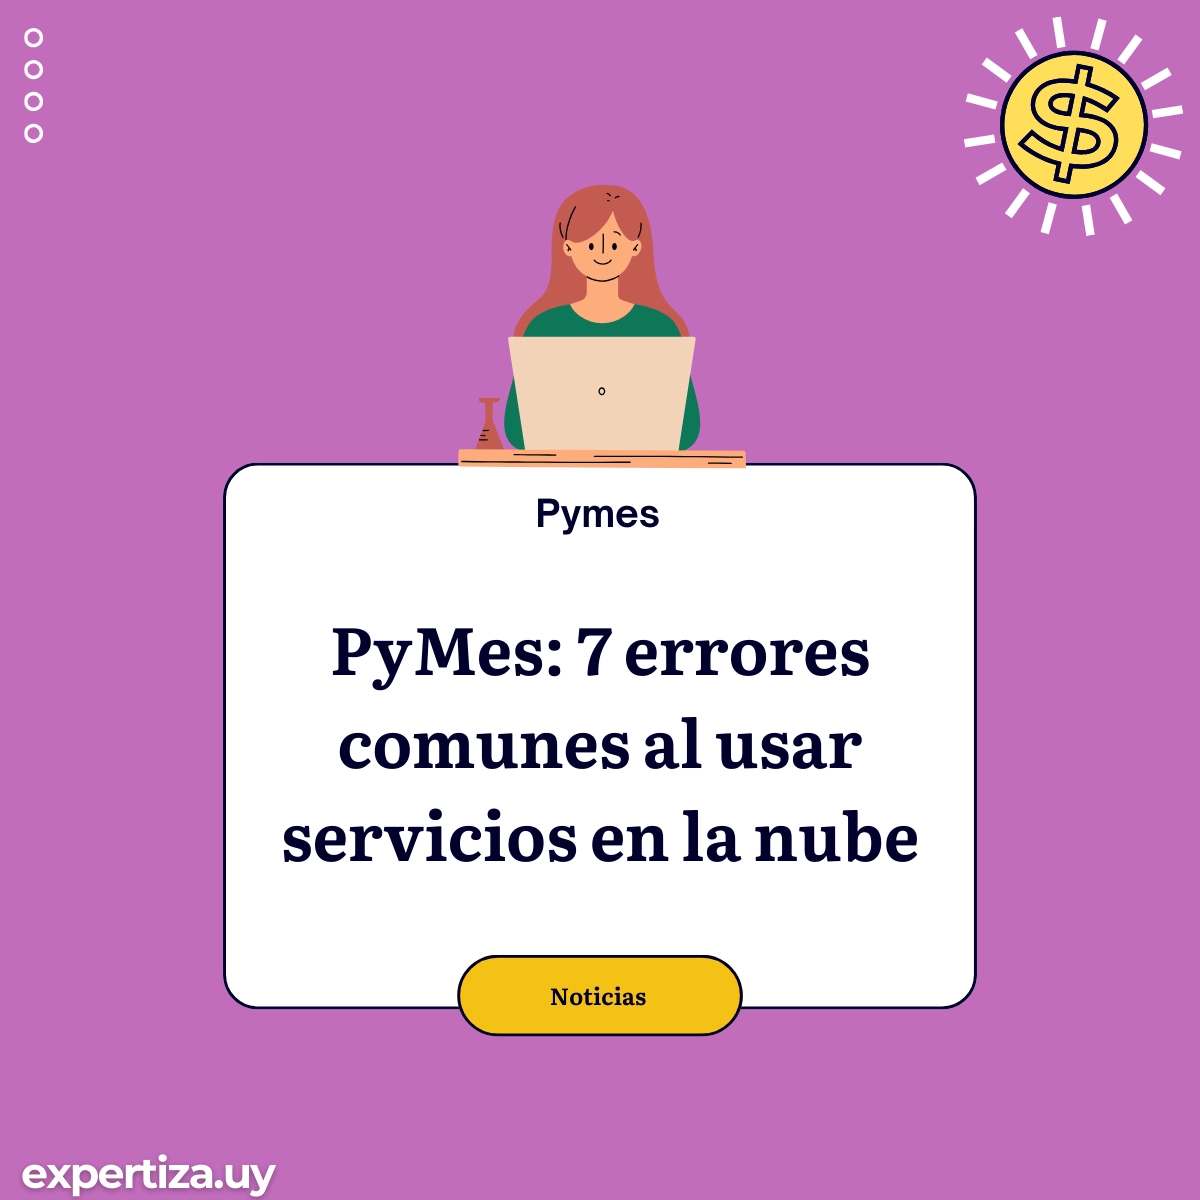 PyMes: 7 errores comunes al usar servicios en la nube.